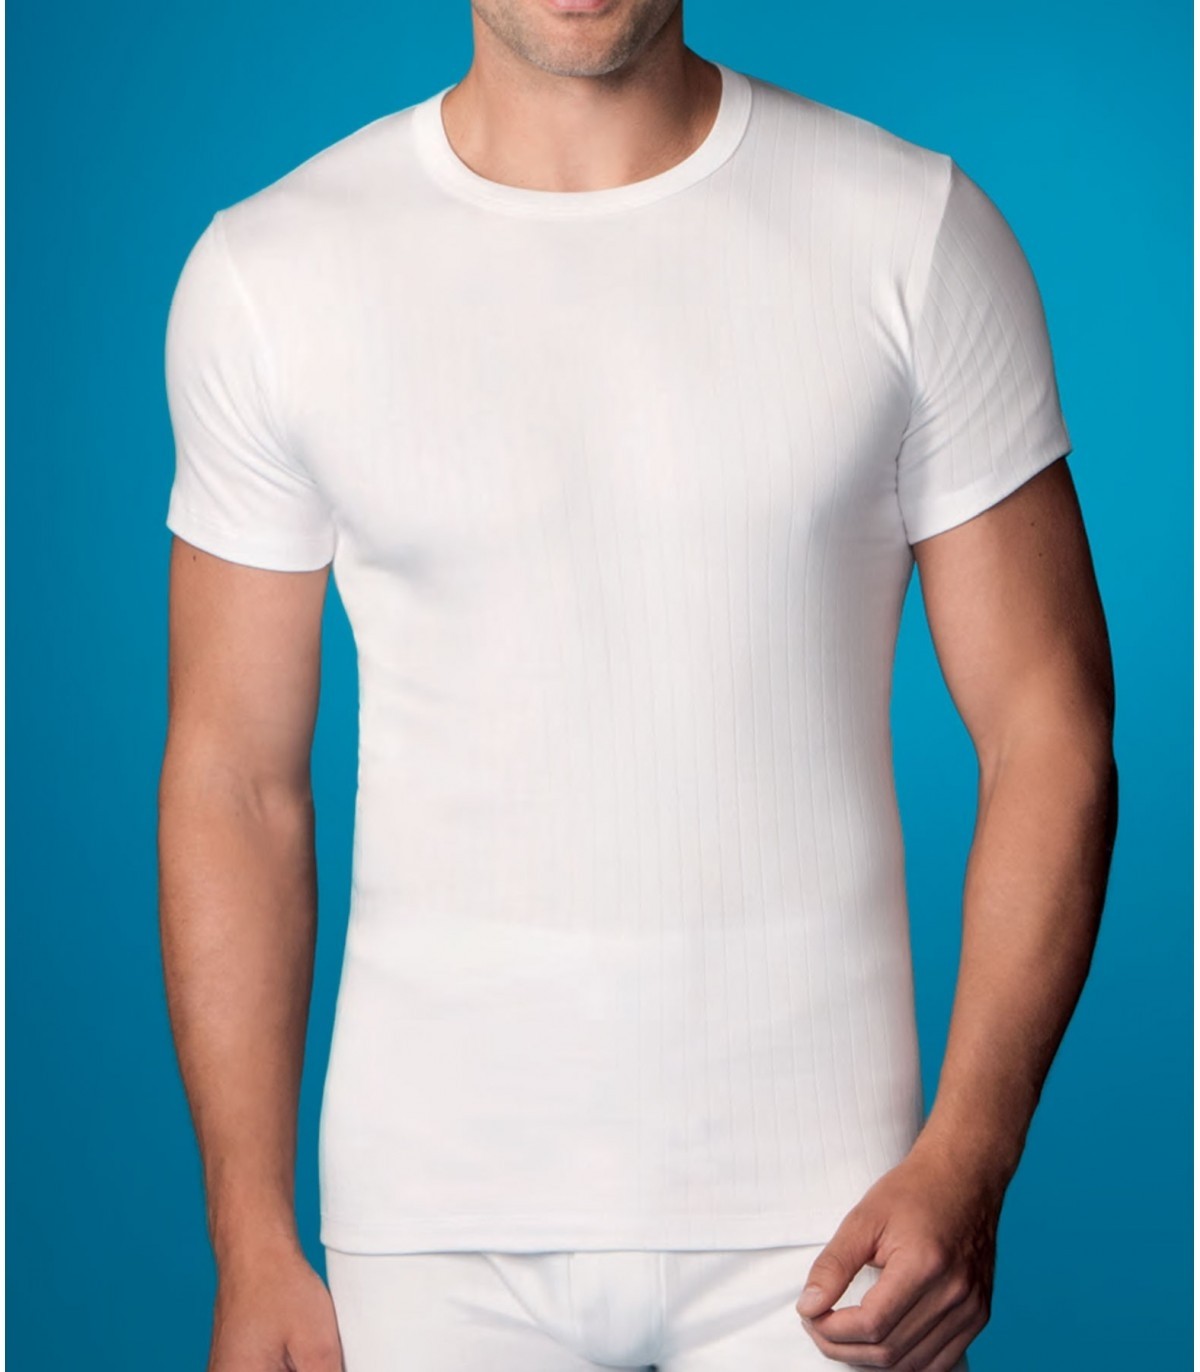 Camiseta Abanderado 206 - CAMISETAS HOMBRE - Tiendas lenceria  Tu Lenceria  al Mejor Precio en todas las marcas que trabajamos